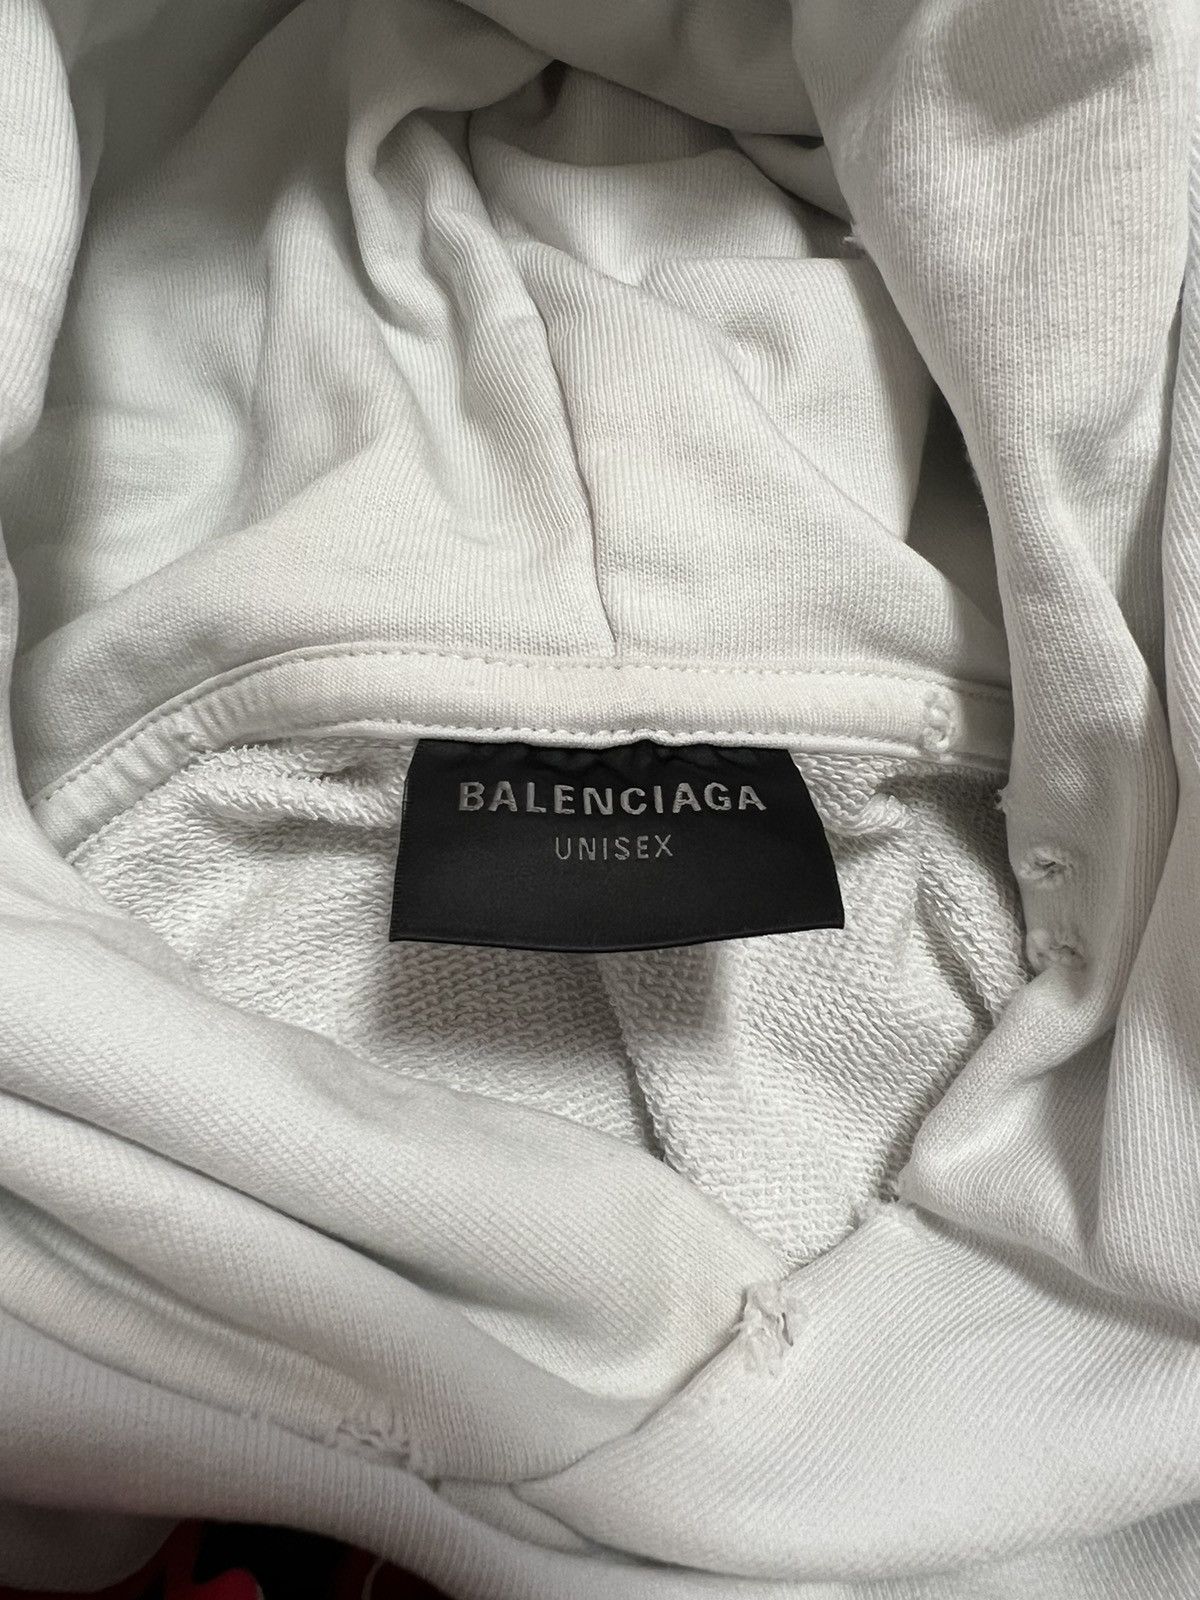 Balenciaga BALENCIAGA DIY COLLEGE HOODIE Size US S / EU 44-46 / 1 - 4 Thumbnail